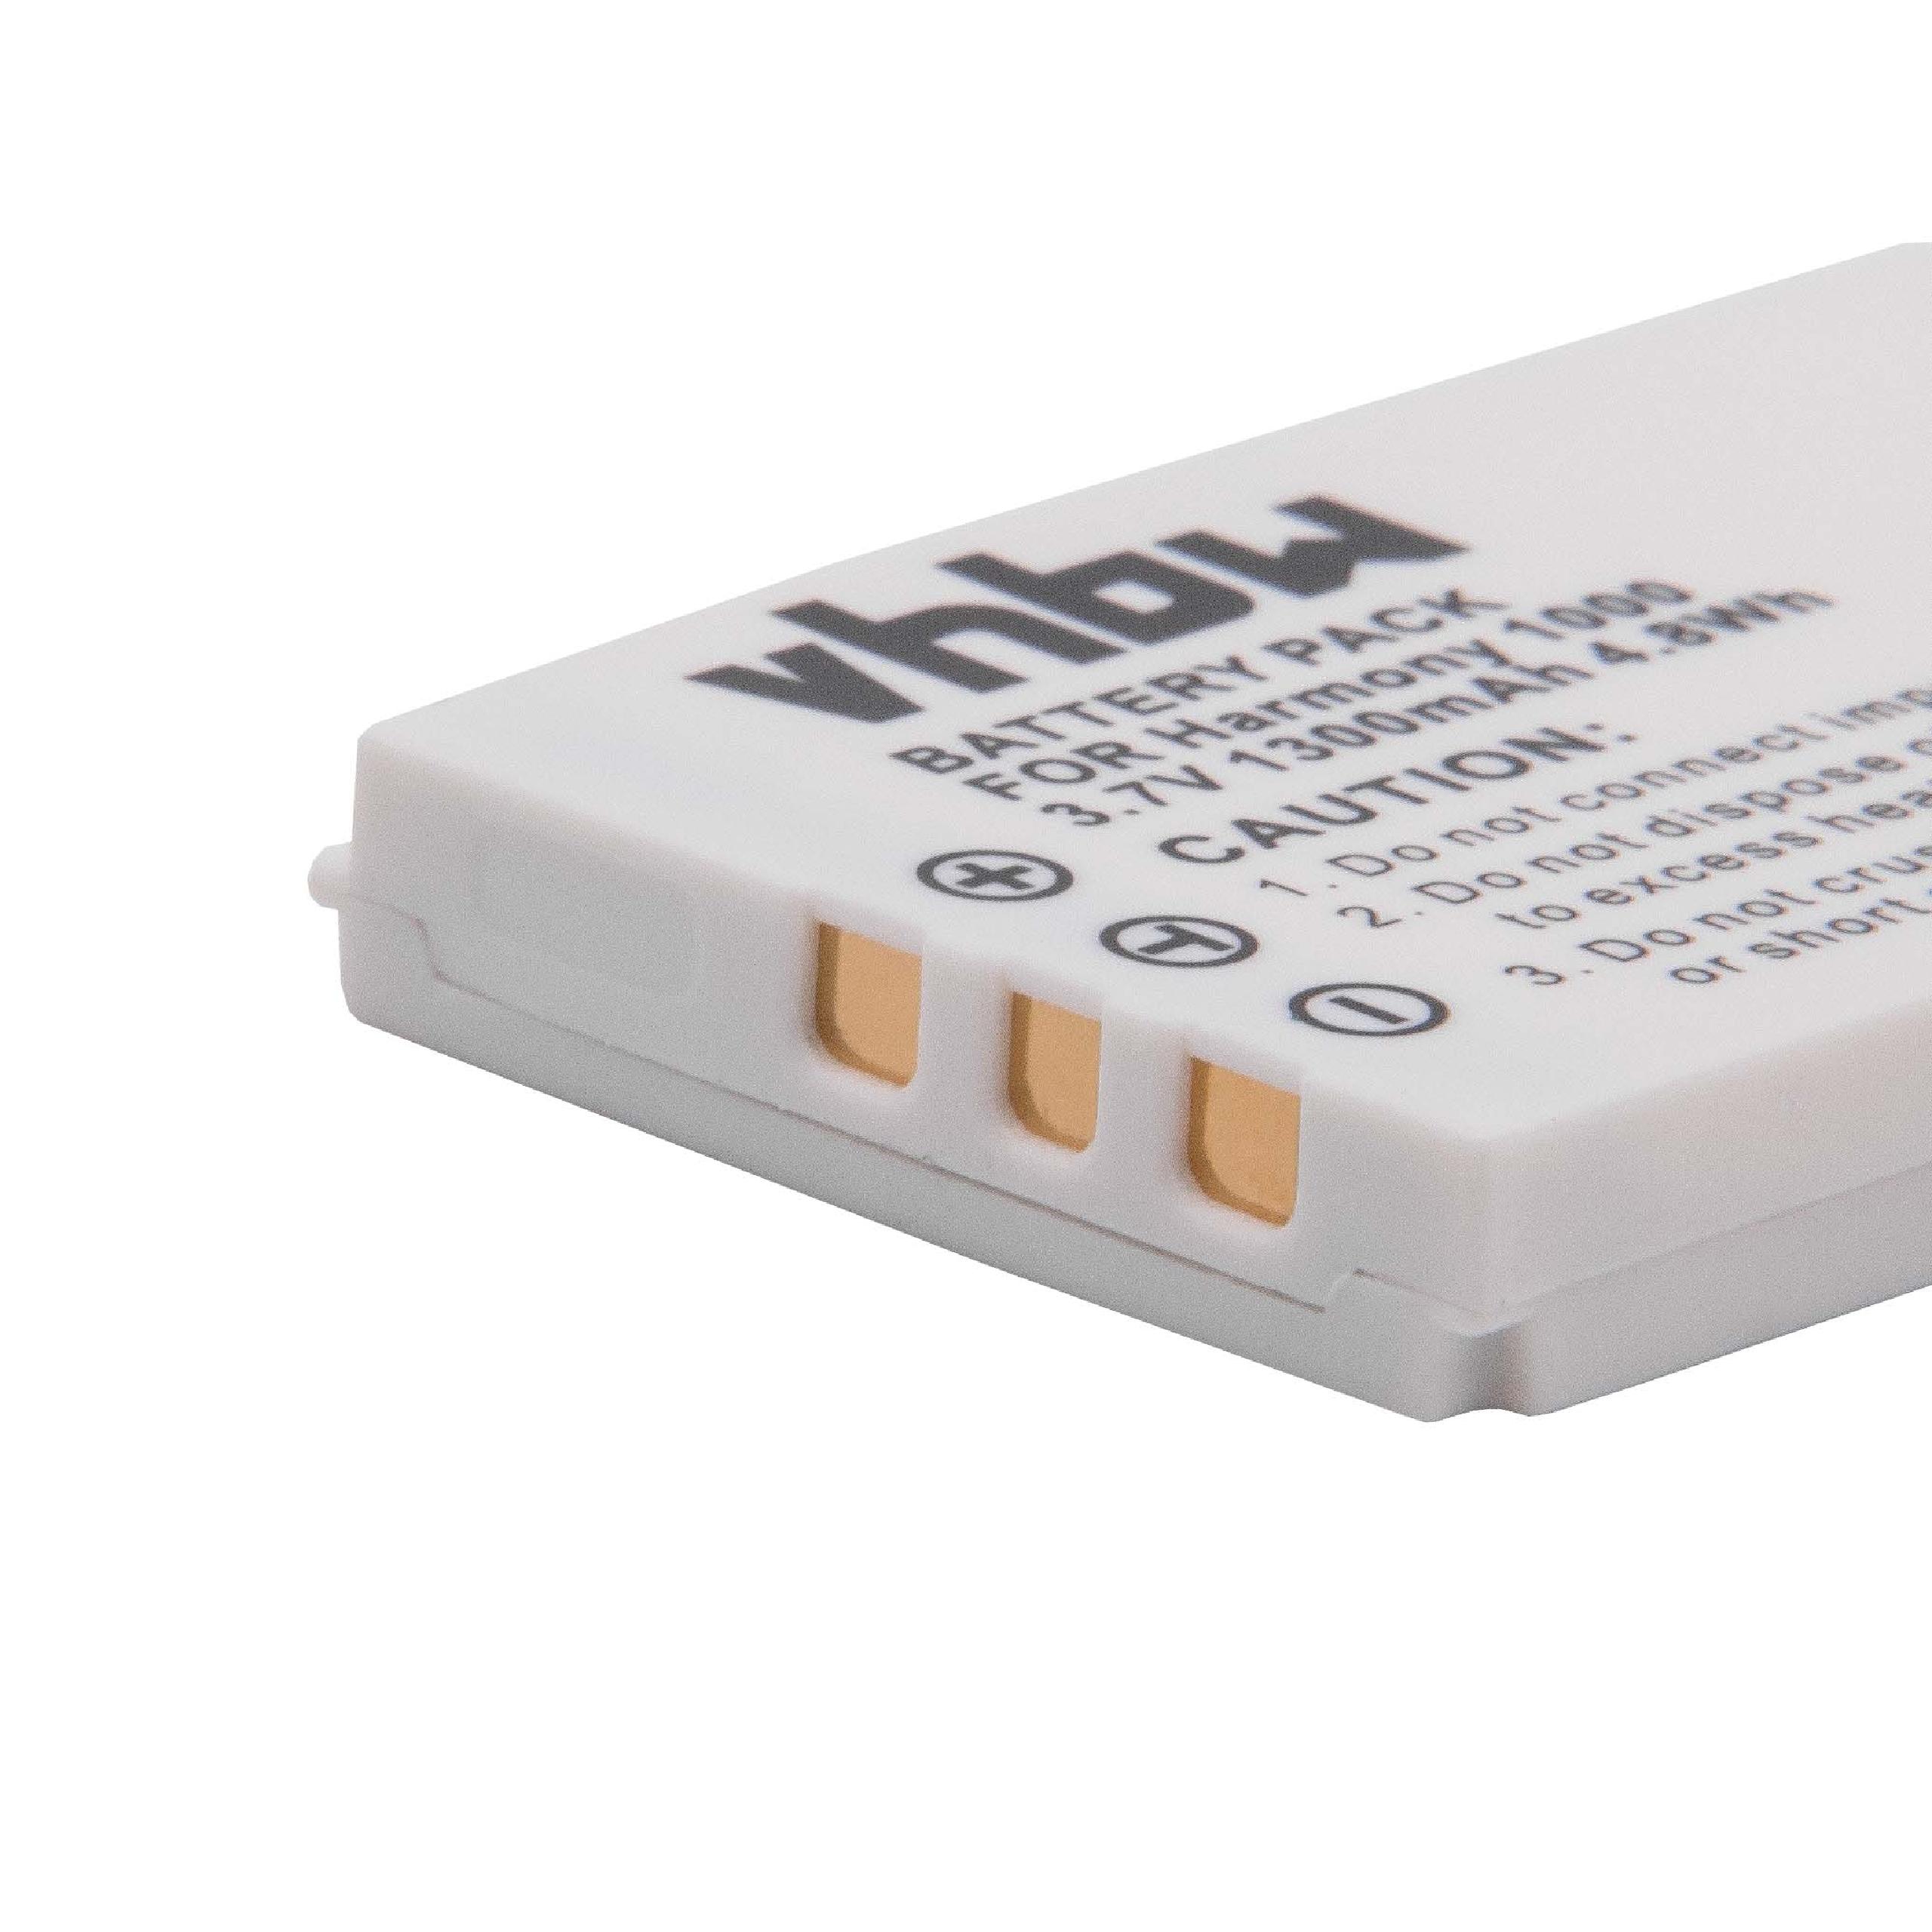 Batterie remplace Logitech 190582-0000, L-LU18, K398, F12440056 pour télécommande - 1300mAh 3,7V Li-ion